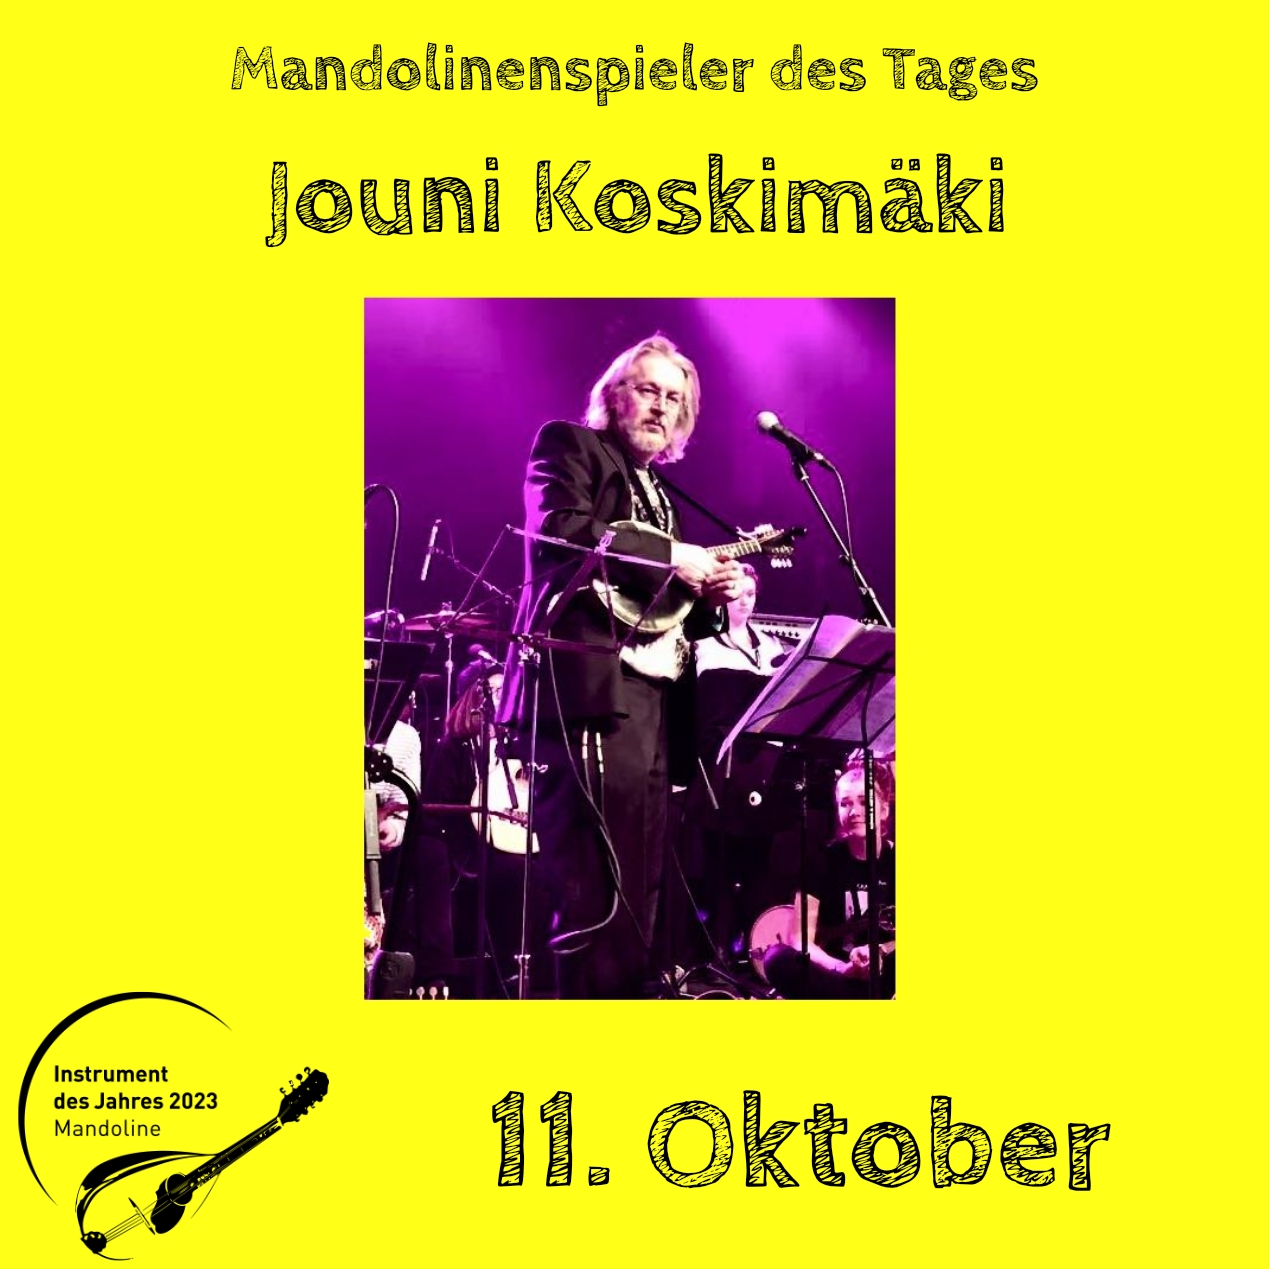 11. Oktober - Jouni Koskimäki Instrument des Jahres 2023 Mandolinenspieler Mandolinenspielerin des Tages